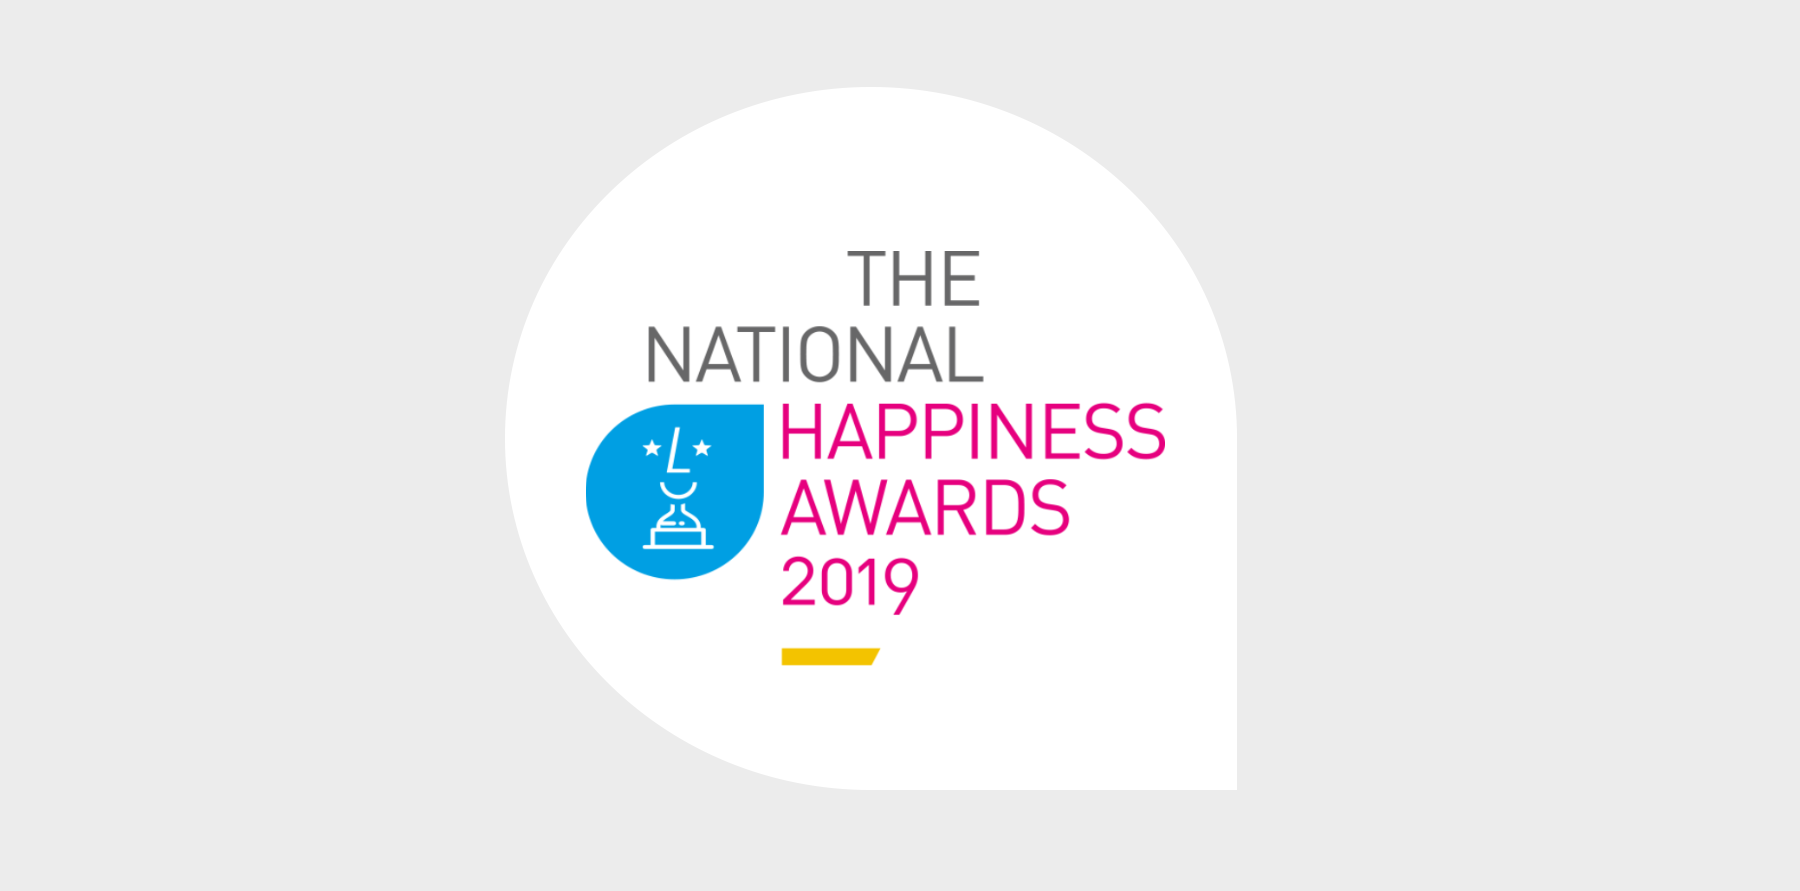 Happiness awards logo